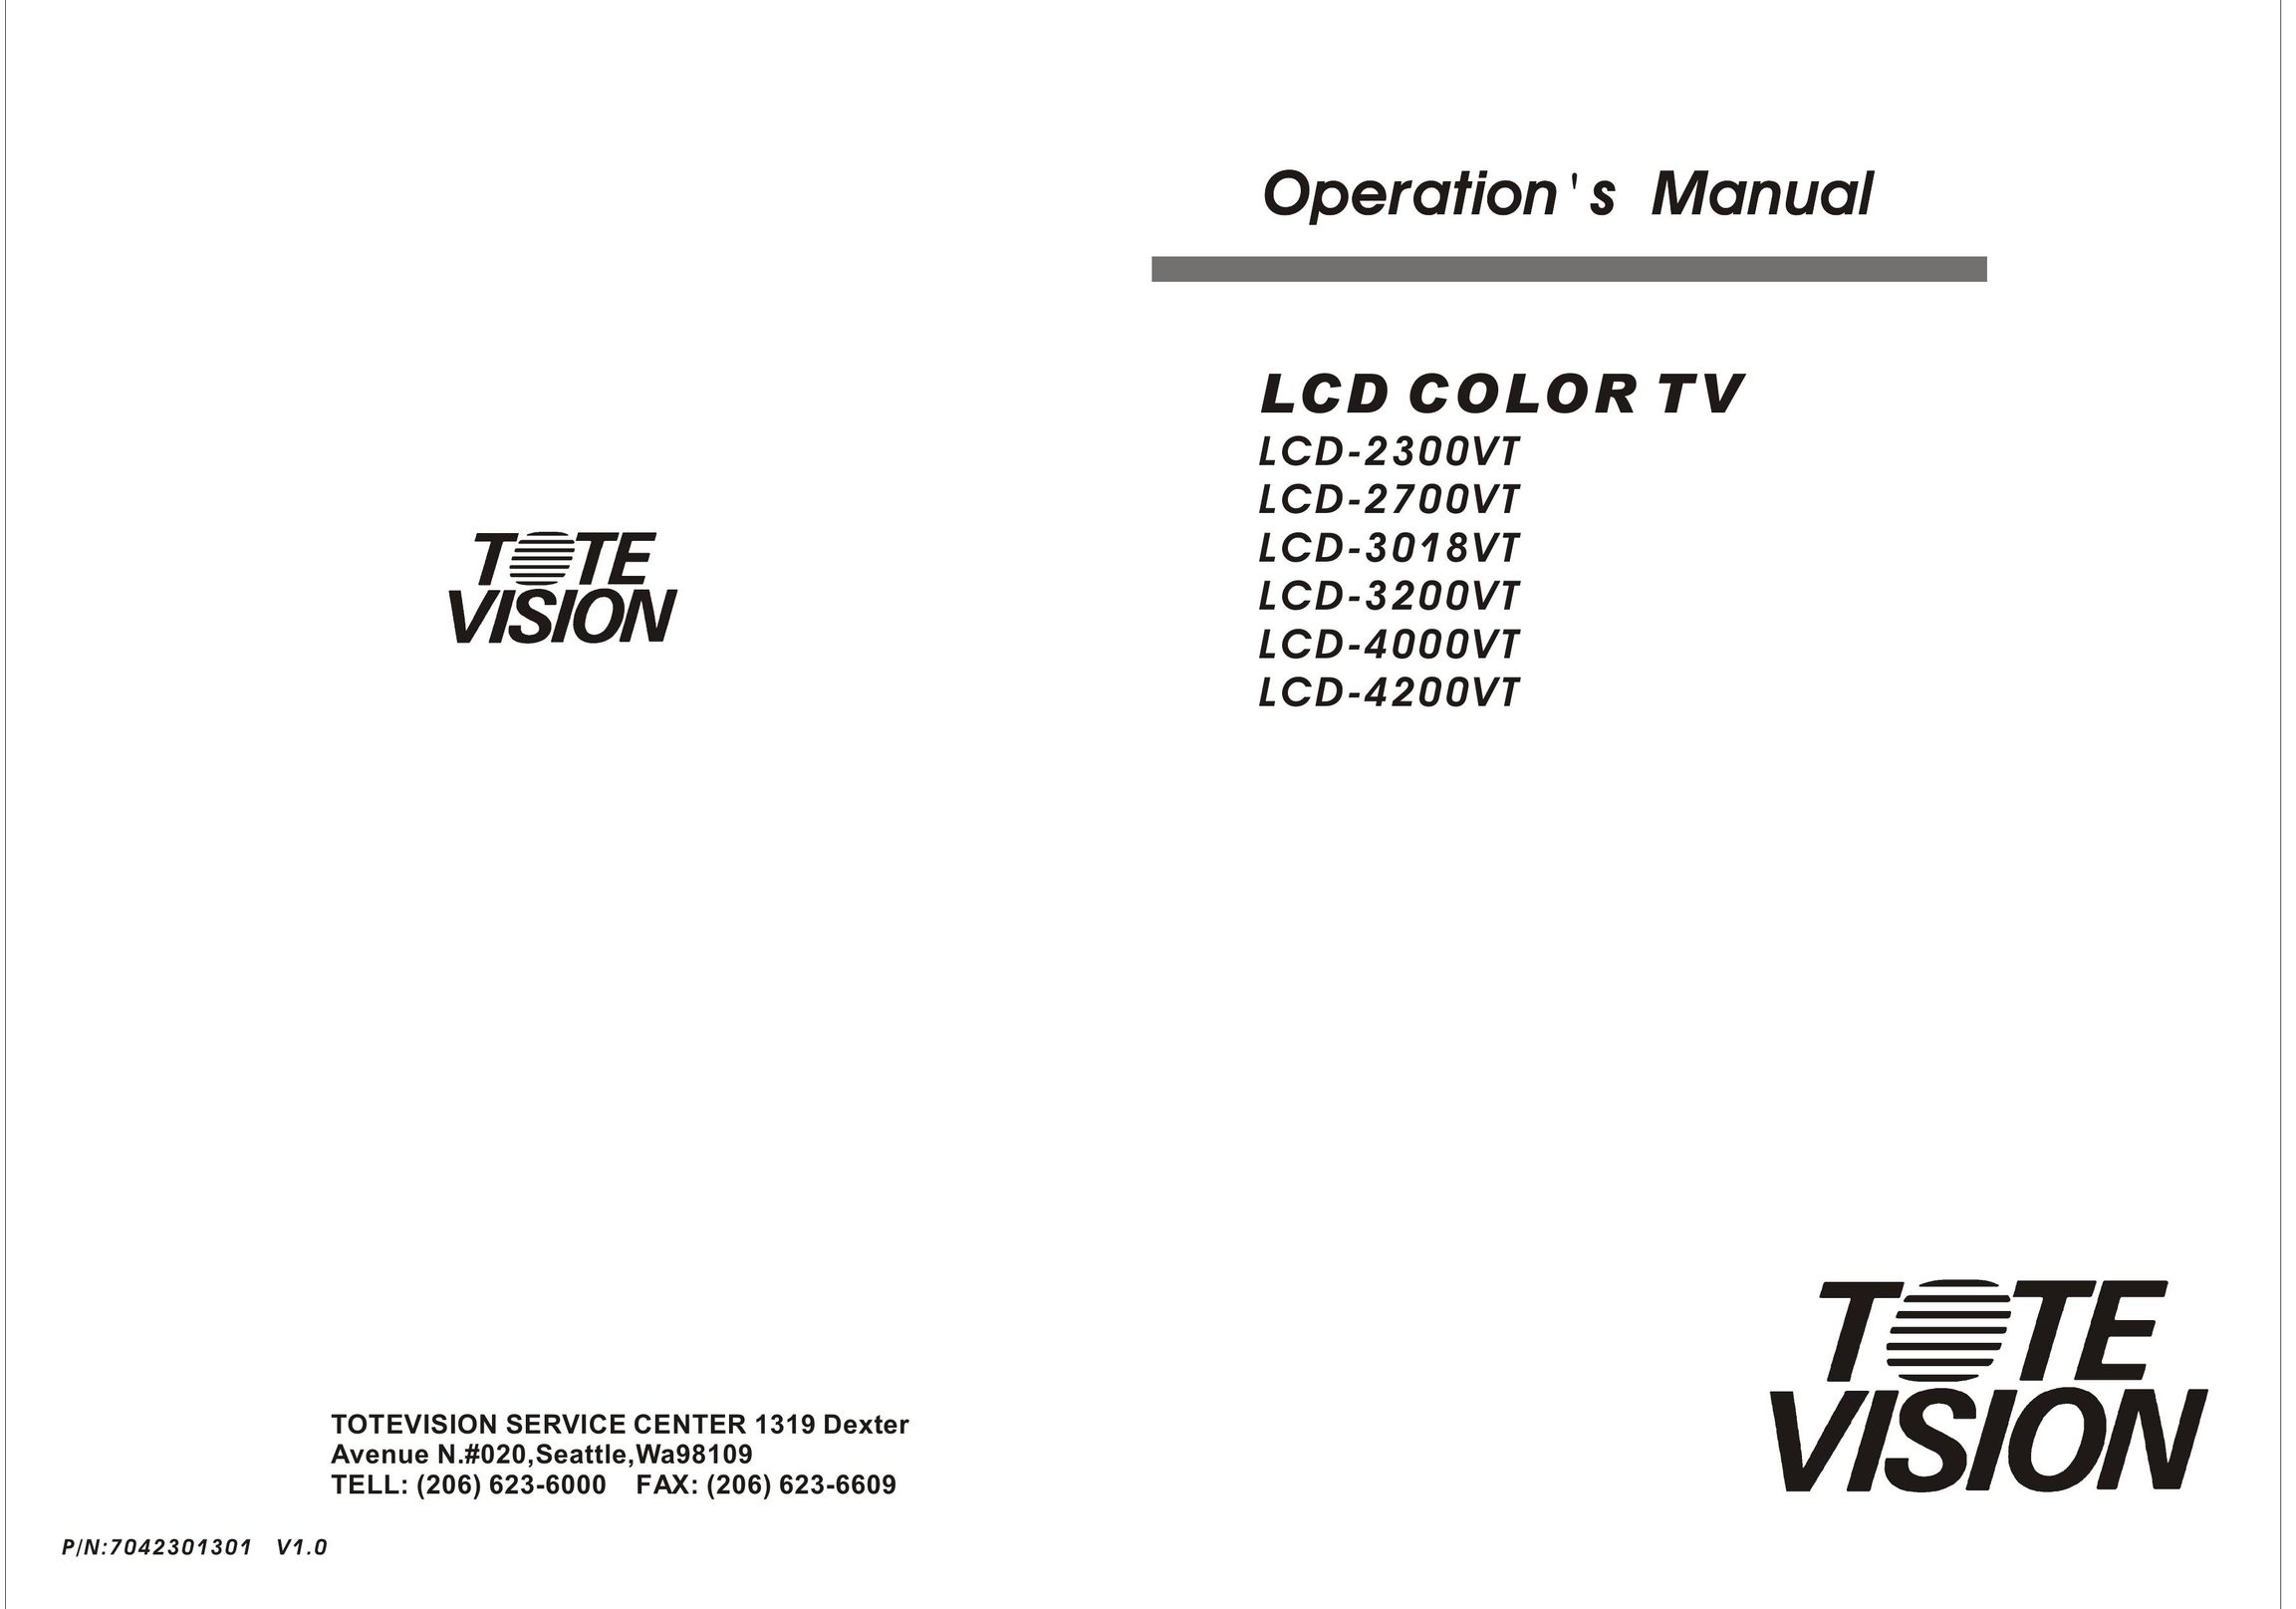 Tote Vision LCD-4000VT Flat Panel Television User Manual